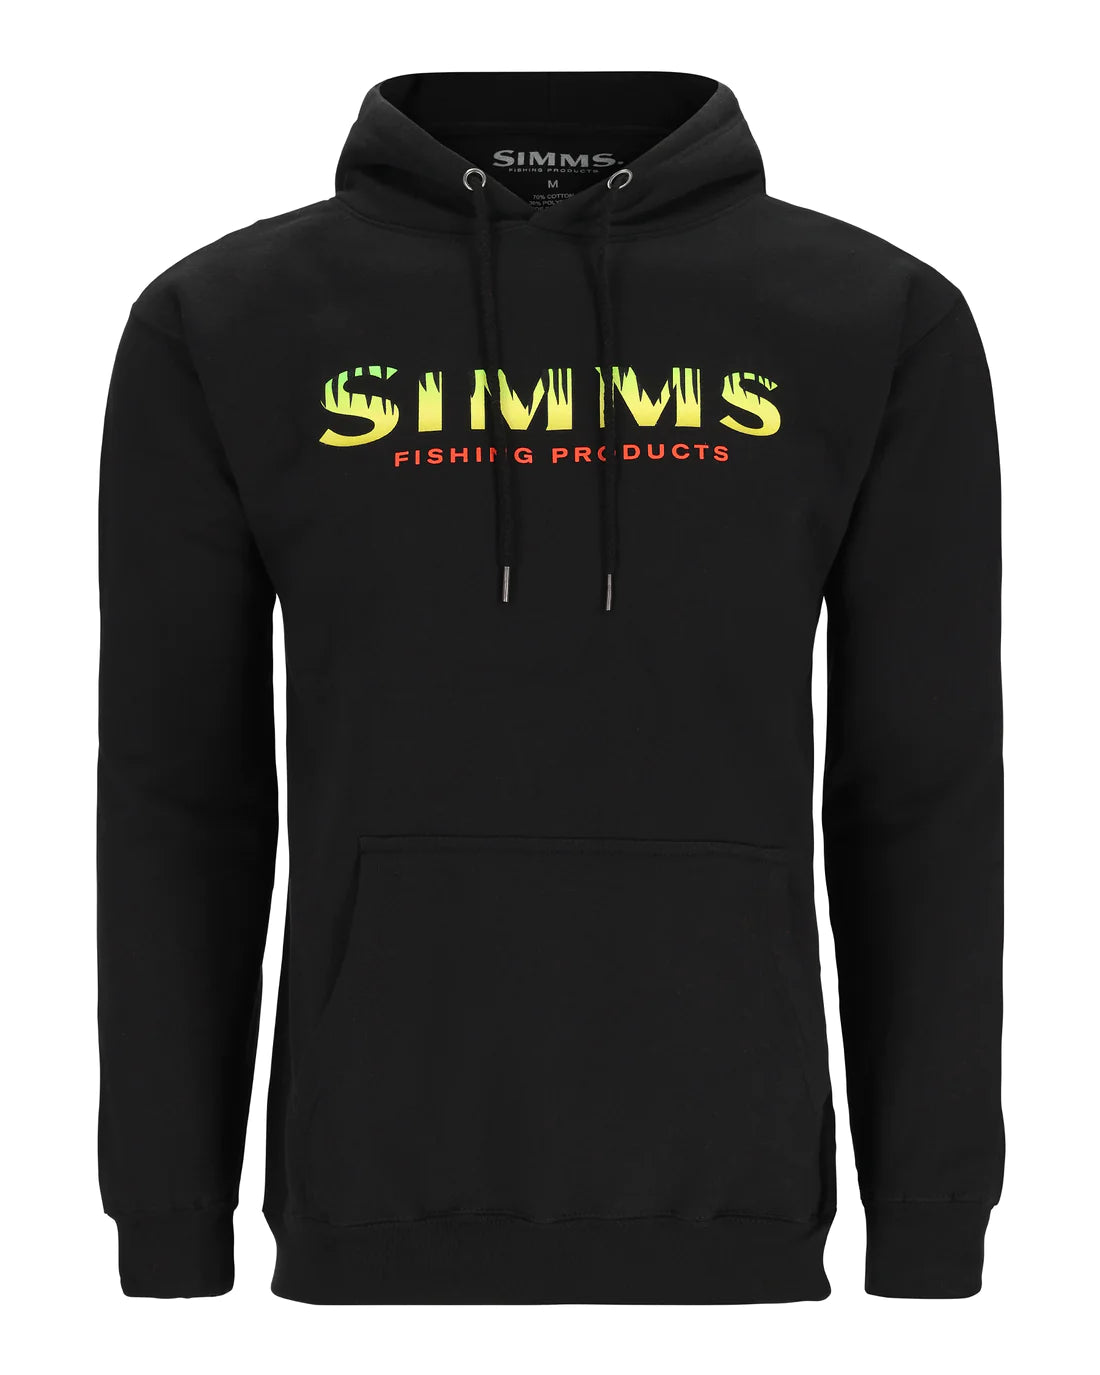 Simms Logo Hoodie - Men's White, XL